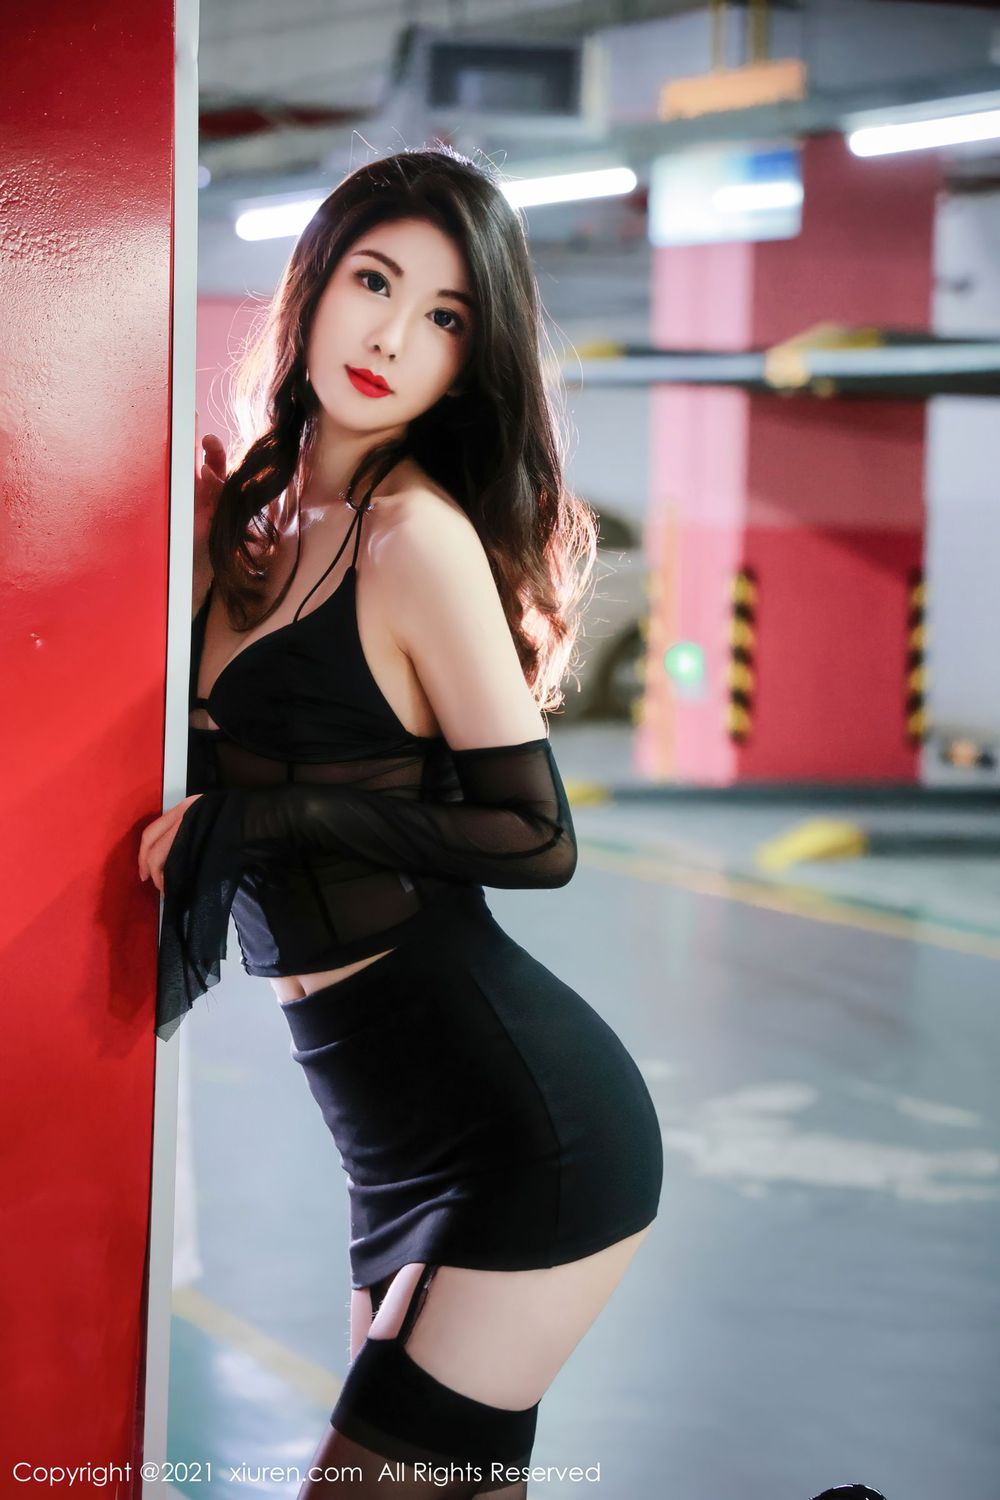 新人模特李雅柔 - 超高挑身材+黑丝美腿首套写真